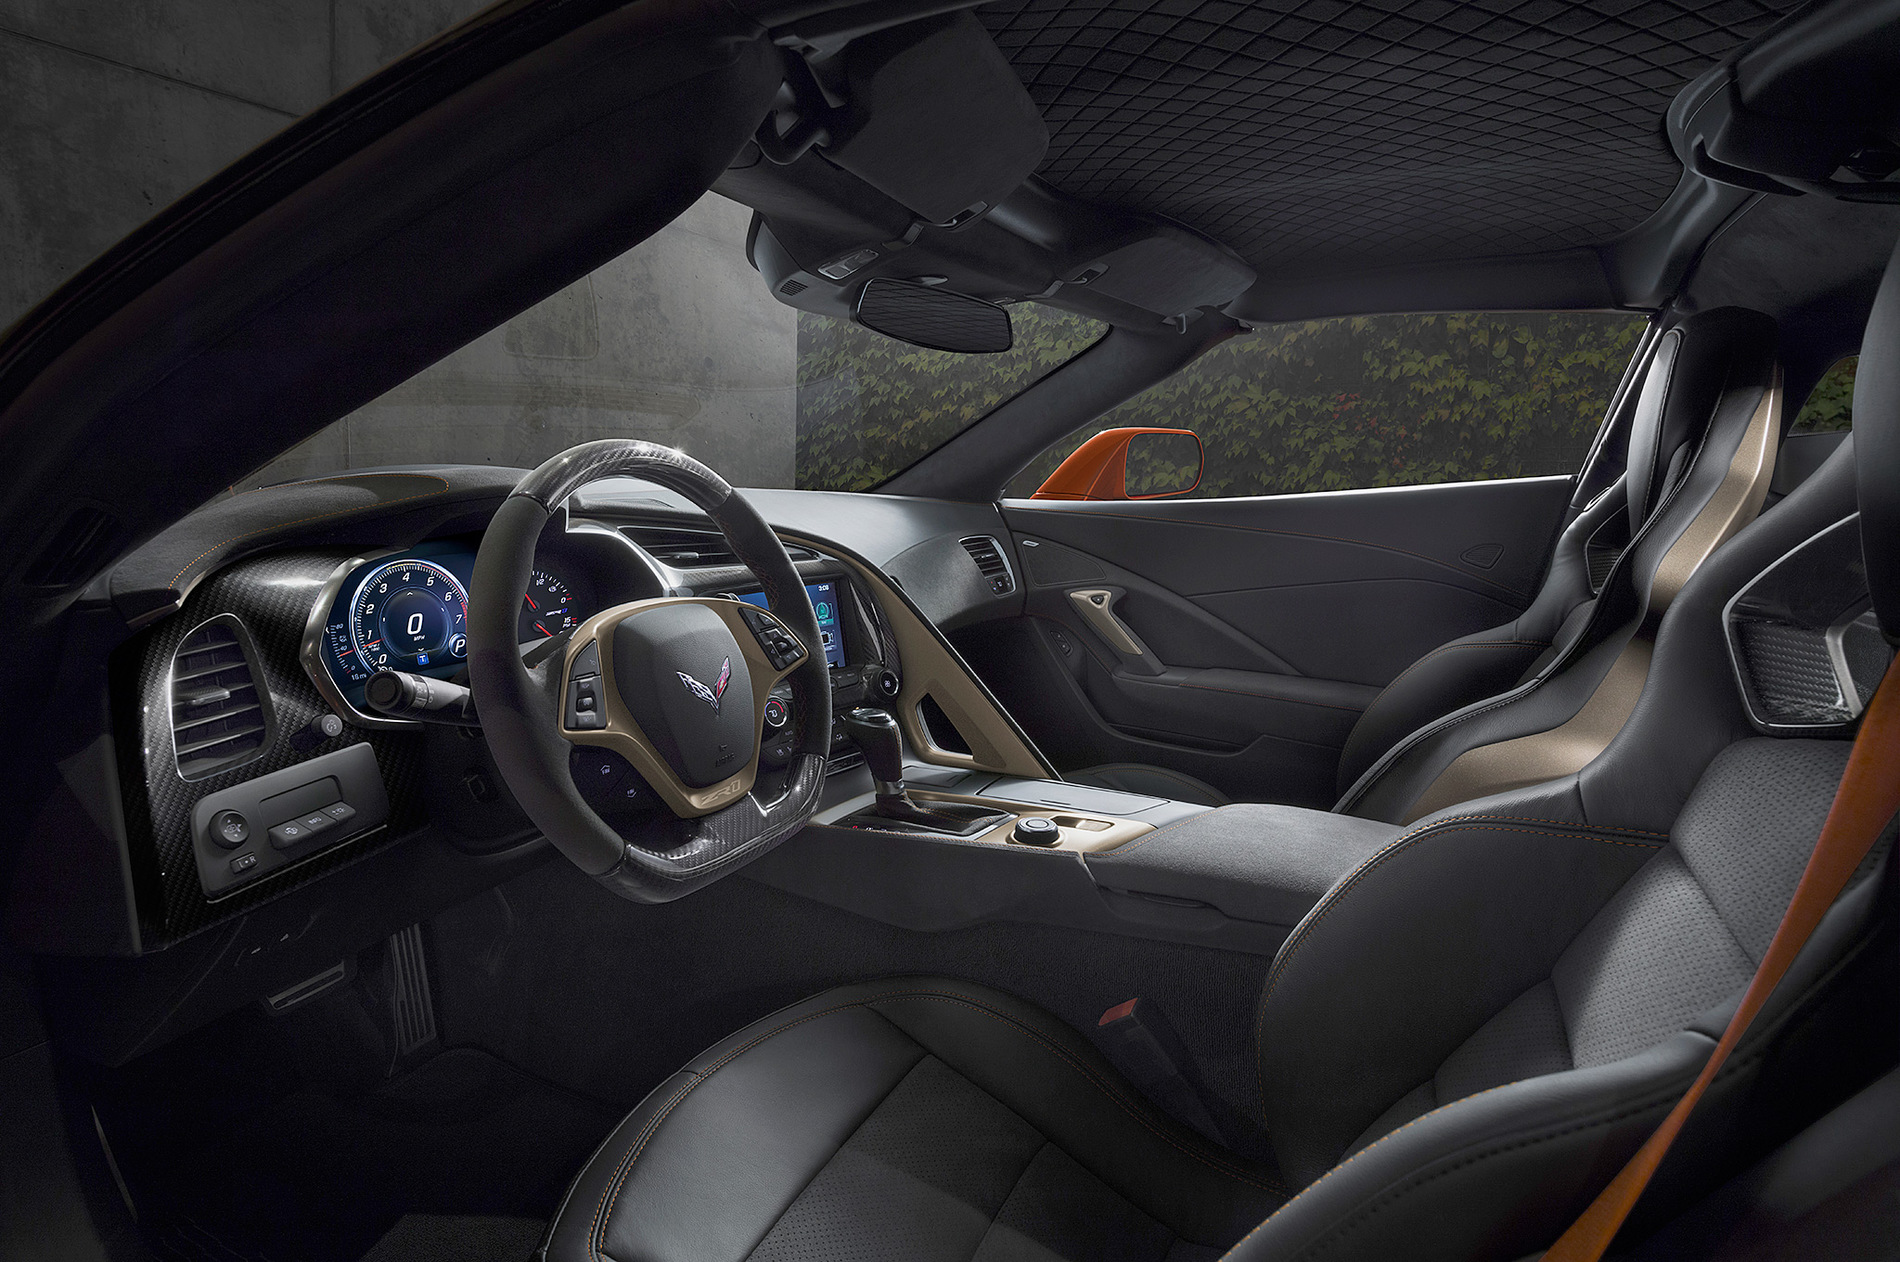 2019-chevrolet-corvette-ZR1-interior-sebring-orange.jpg